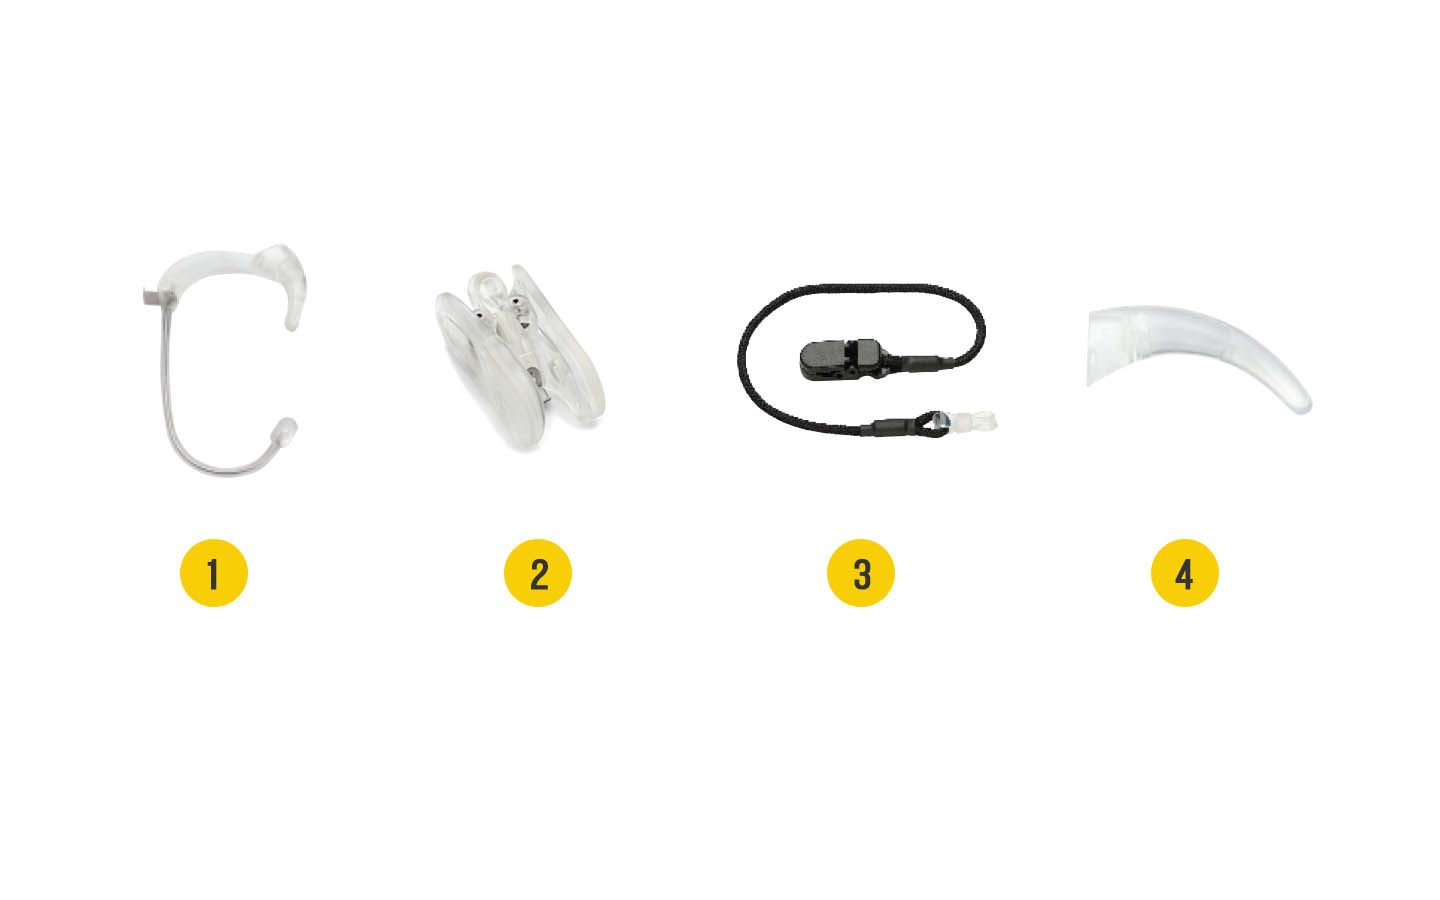 NUCLEUS® 7声音处理器附件图片：1．Snugfit防脱落耳钩，2. 考拉固定夹，3. 安全绳，4. 耳钩